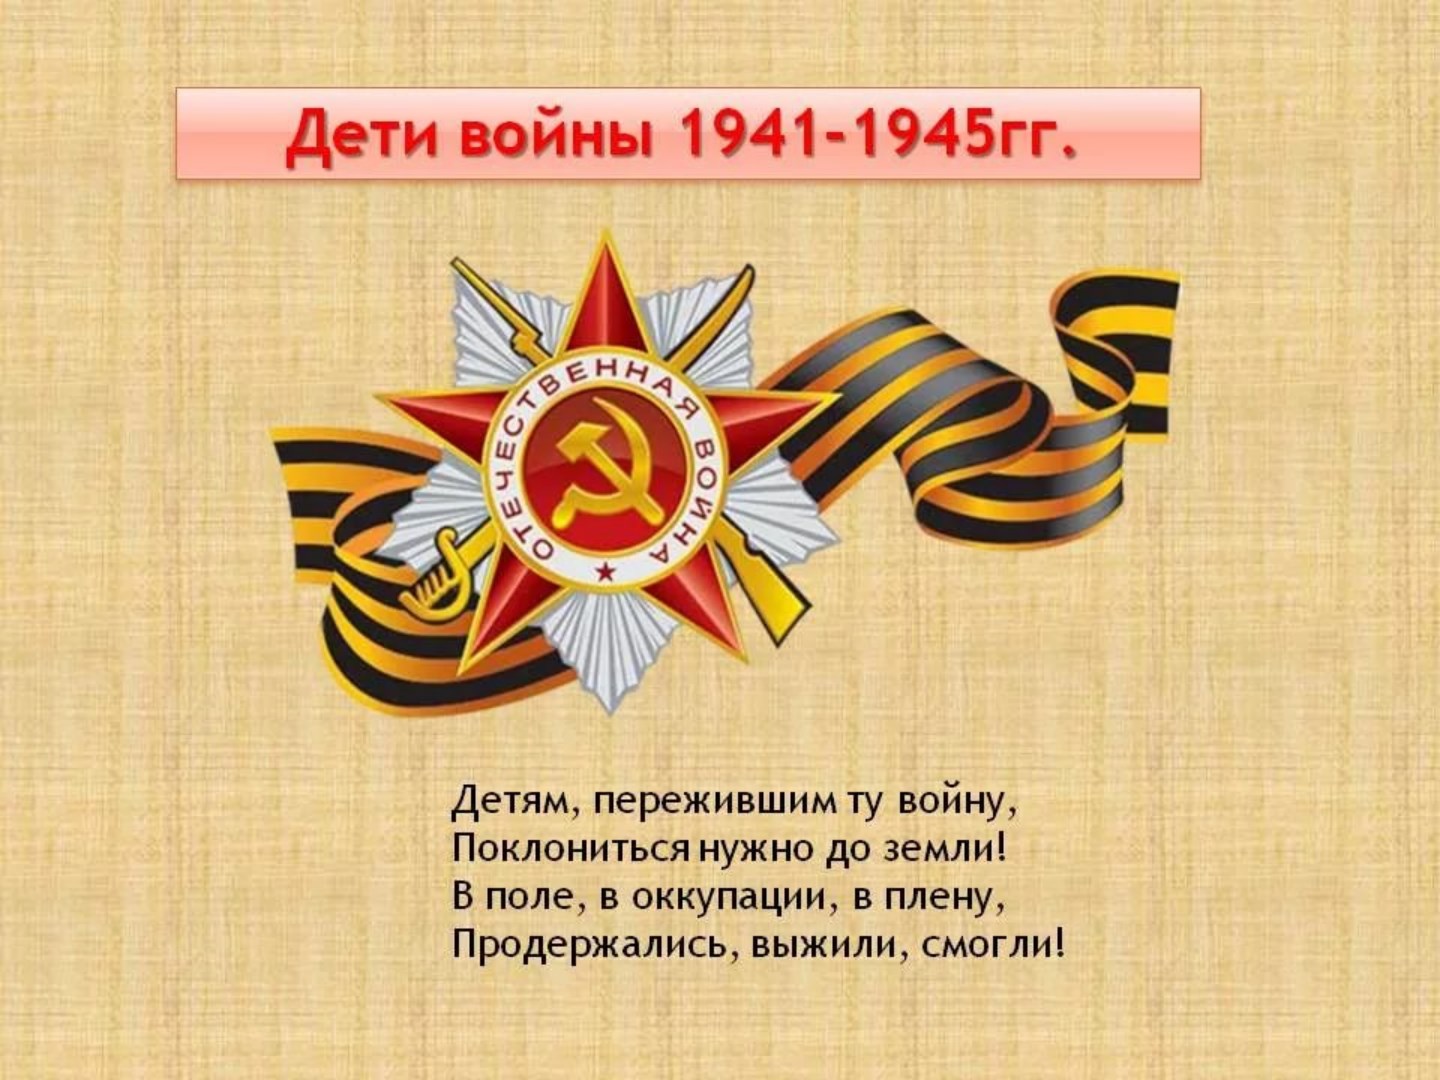 Дети Великой Отечественной войны 1941-1945